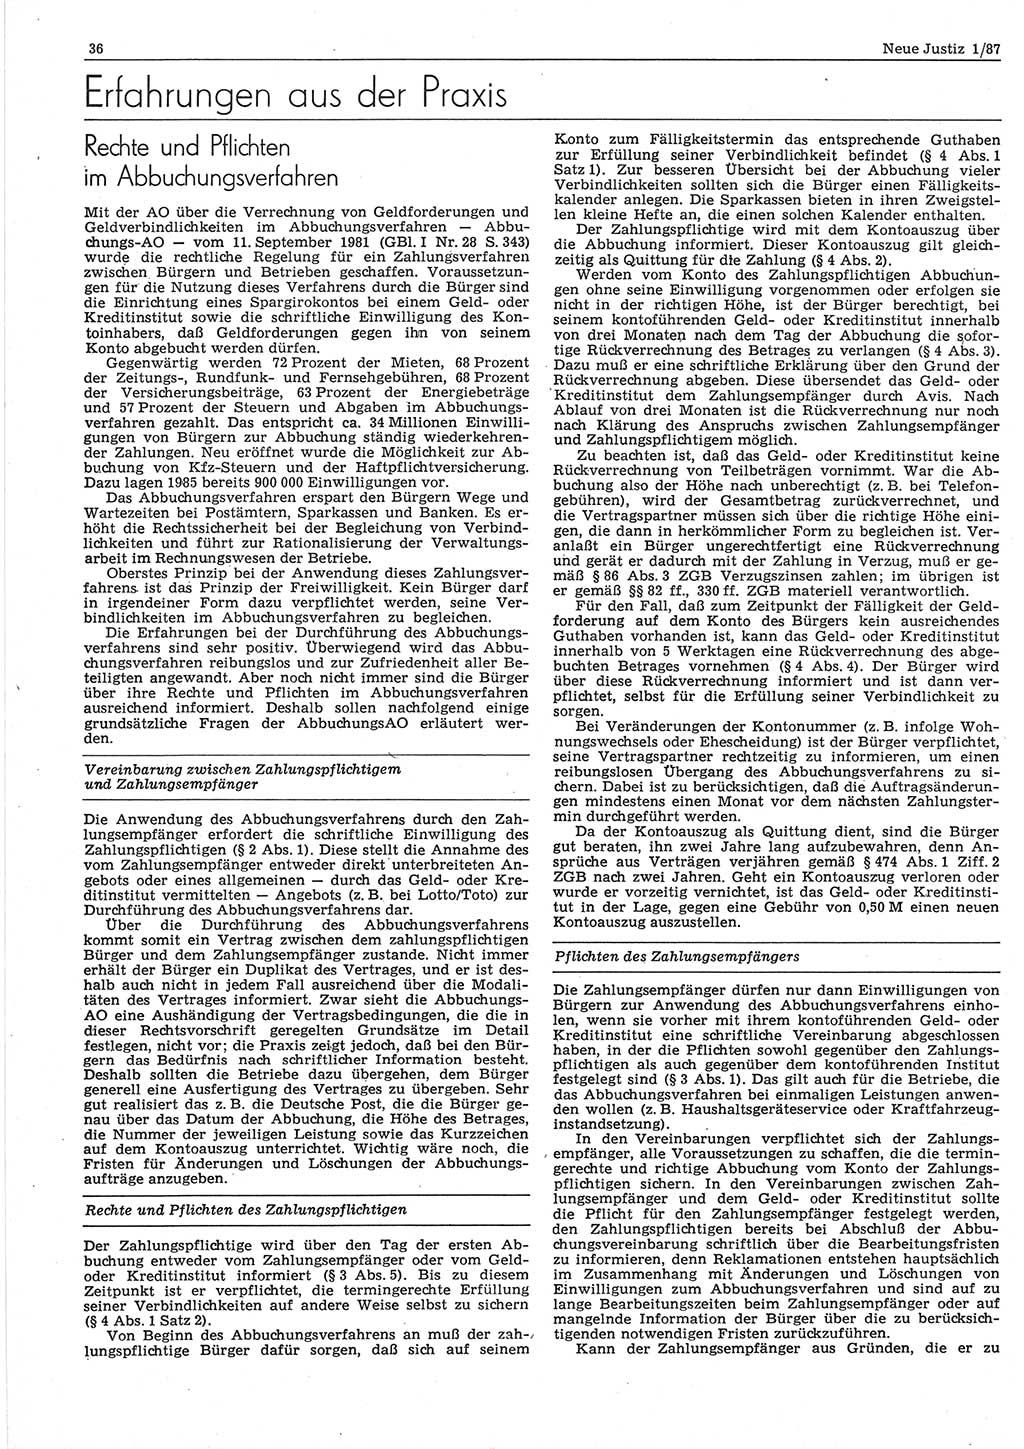 Neue Justiz (NJ), Zeitschrift für sozialistisches Recht und Gesetzlichkeit [Deutsche Demokratische Republik (DDR)], 41. Jahrgang 1987, Seite 36 (NJ DDR 1987, S. 36)